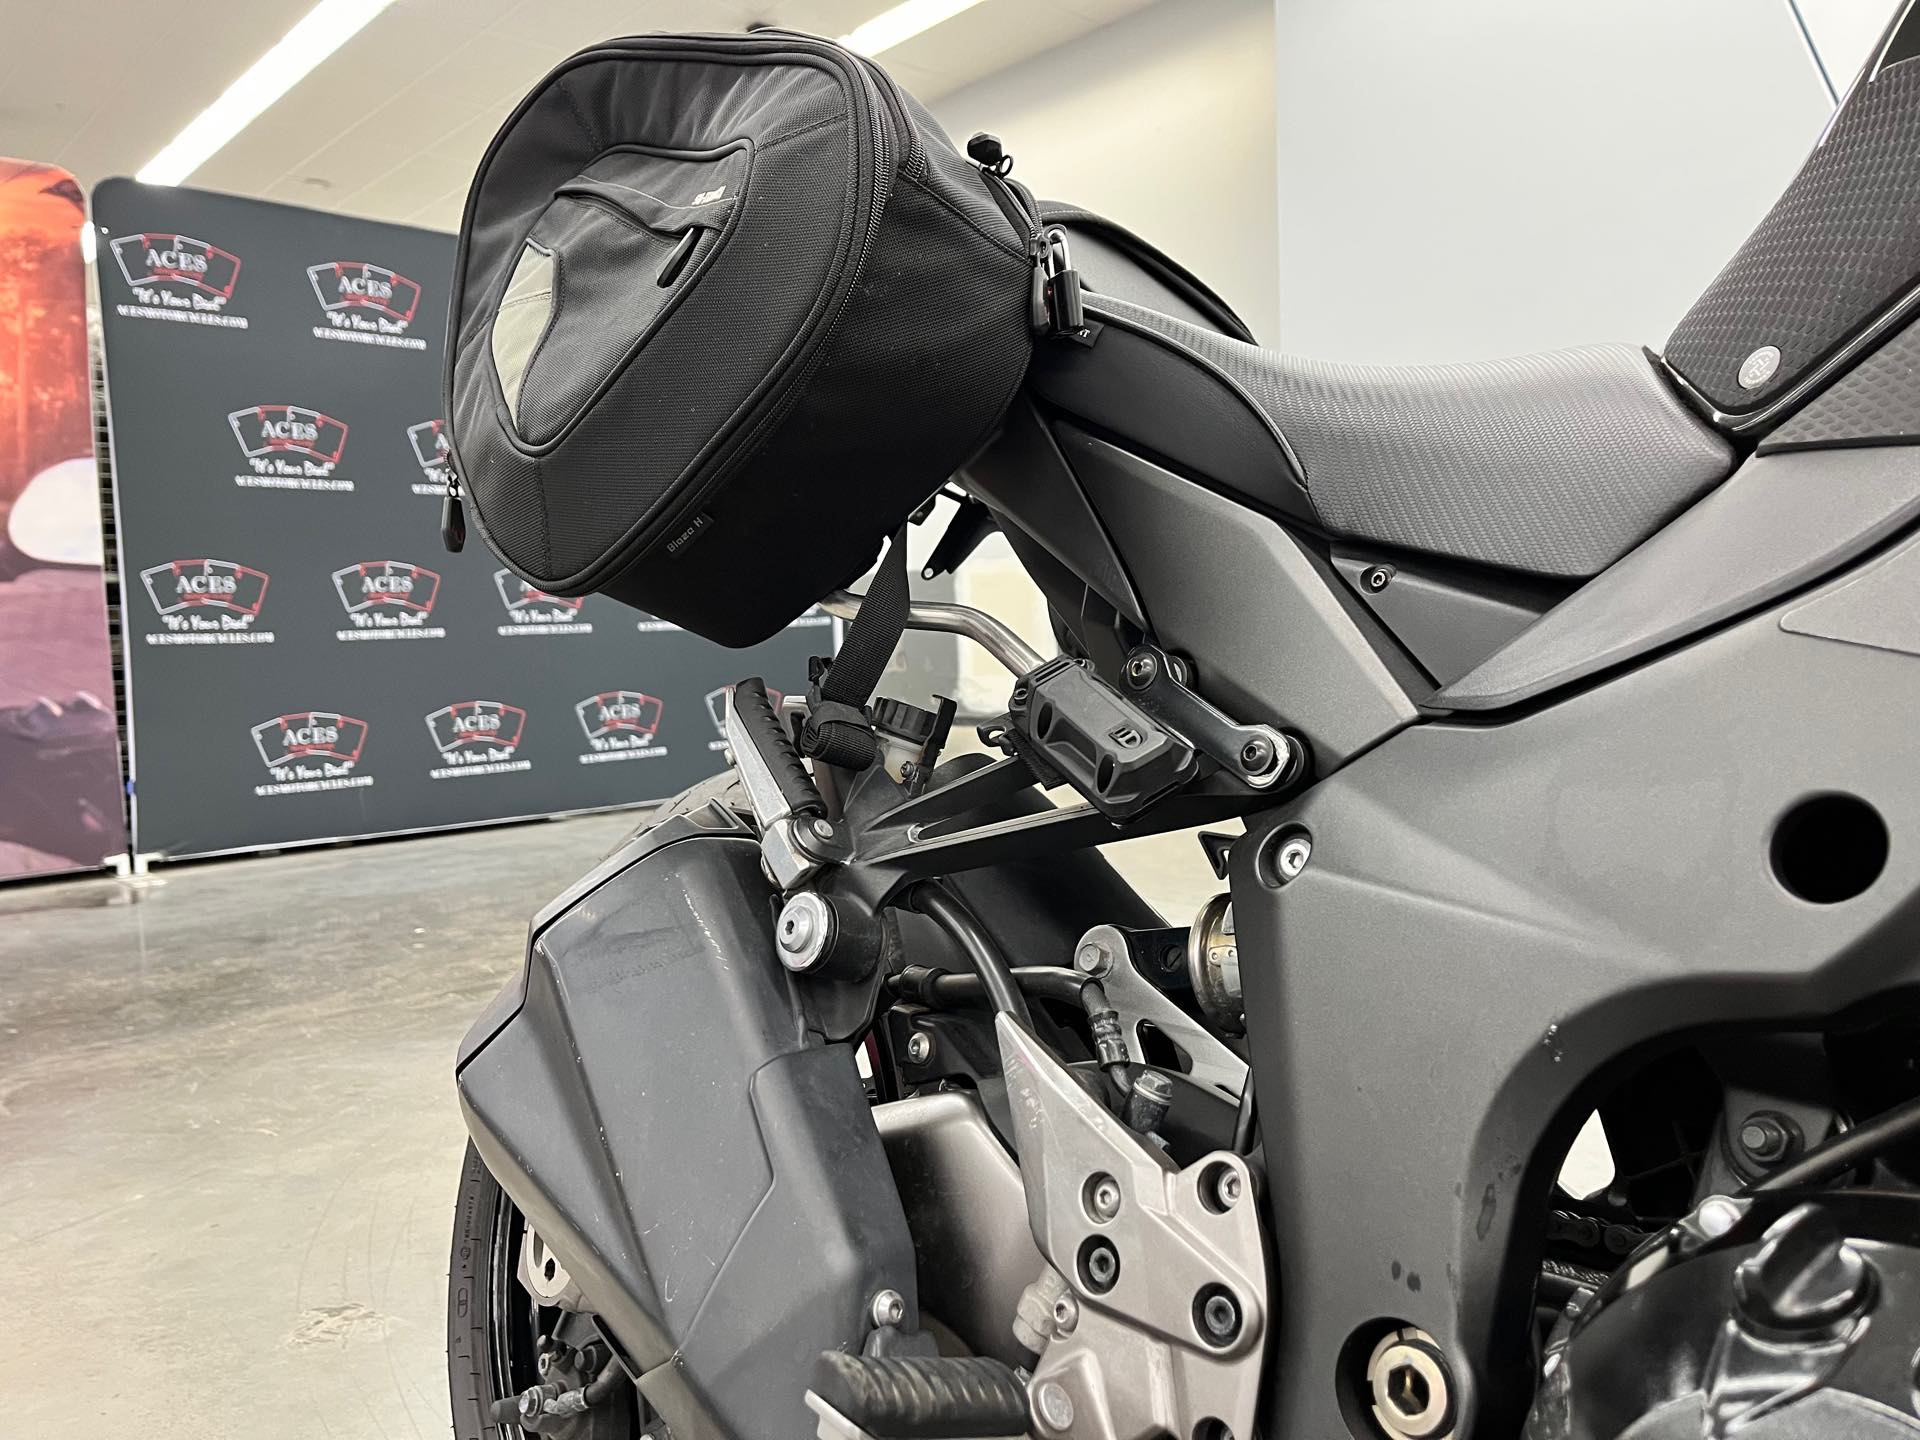 2012 Kawasaki Ninja 1000 at Aces Motorcycles - Denver